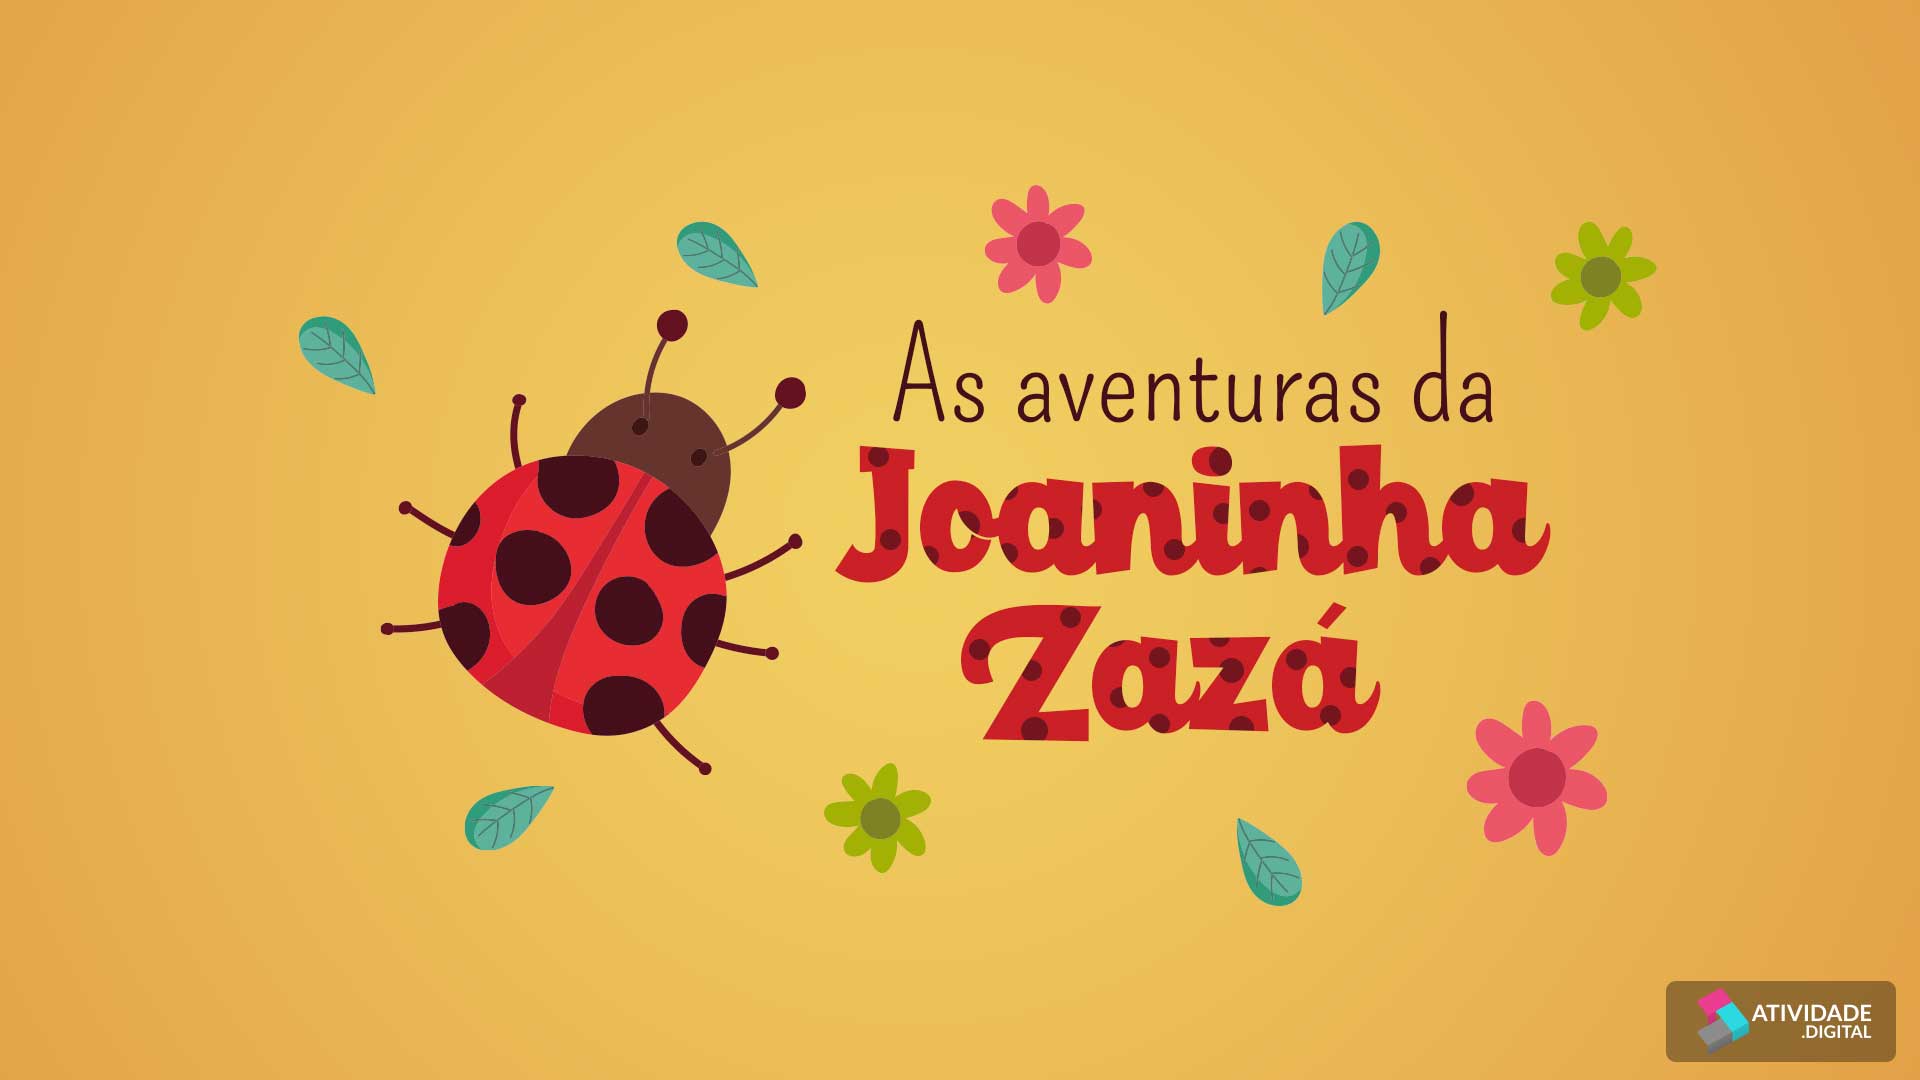 As aventuras da Joaninha Zazá